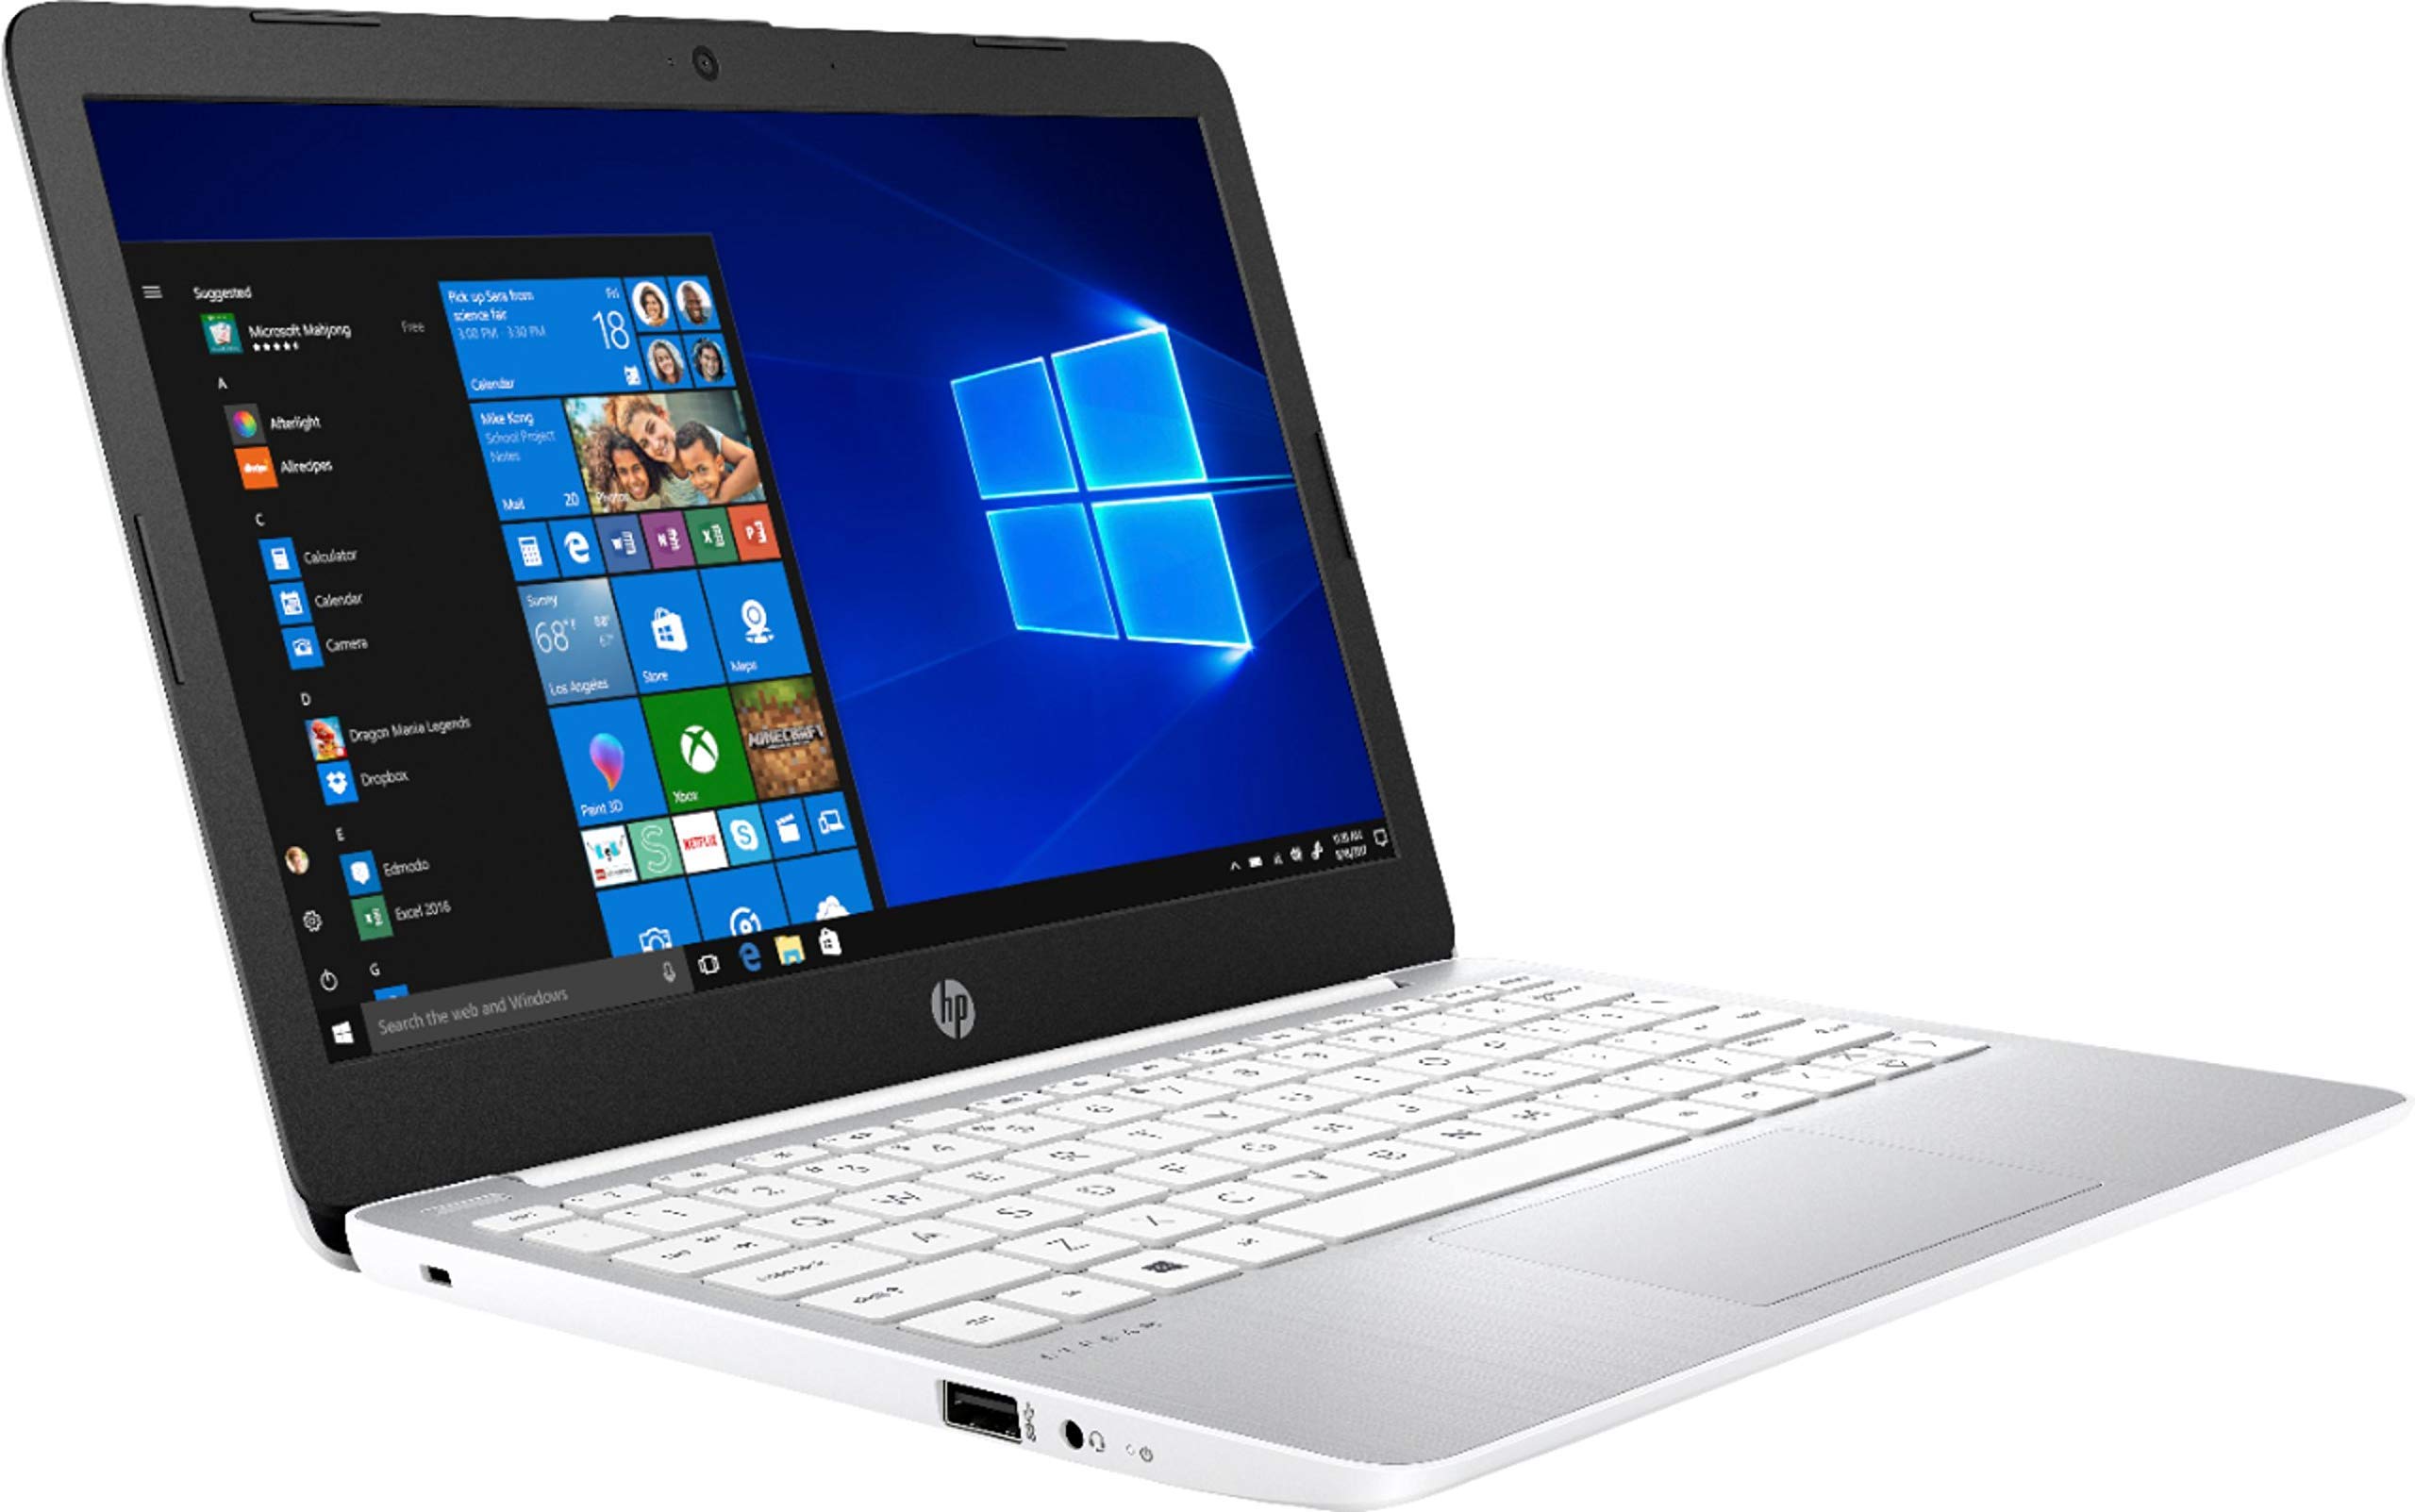 2020 Newest HP Stream 11.6 inch HD Laptop, Intel Celeron N4000, 4 GB RAM, 64 GB eMMC, Webcam, HDMI, Windows 10 (Renewed)